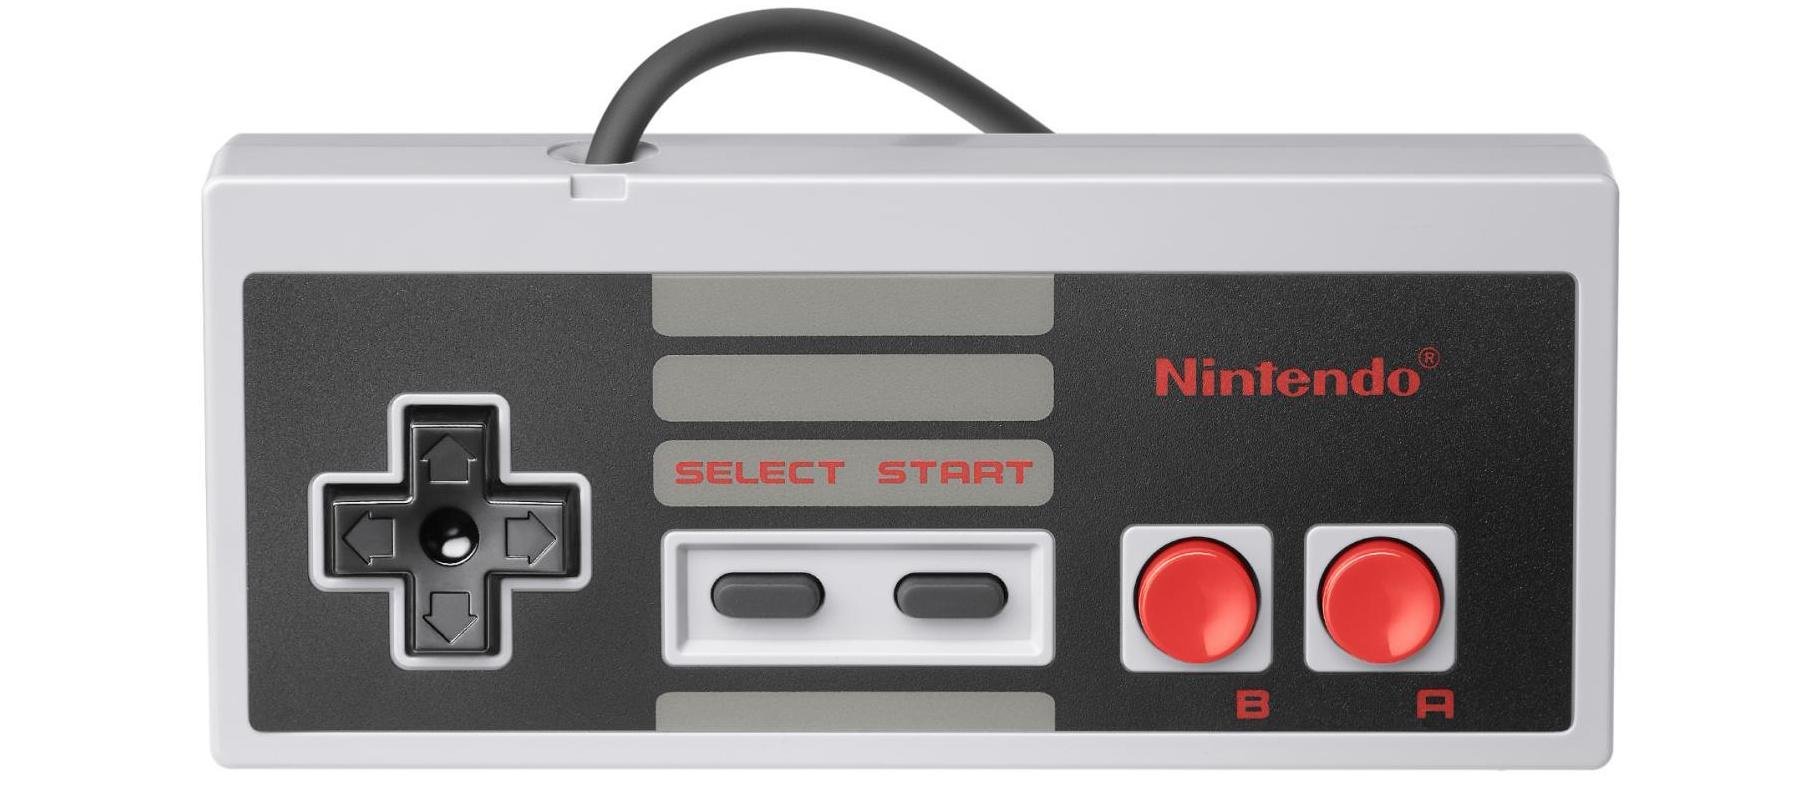 NES Classic Controller